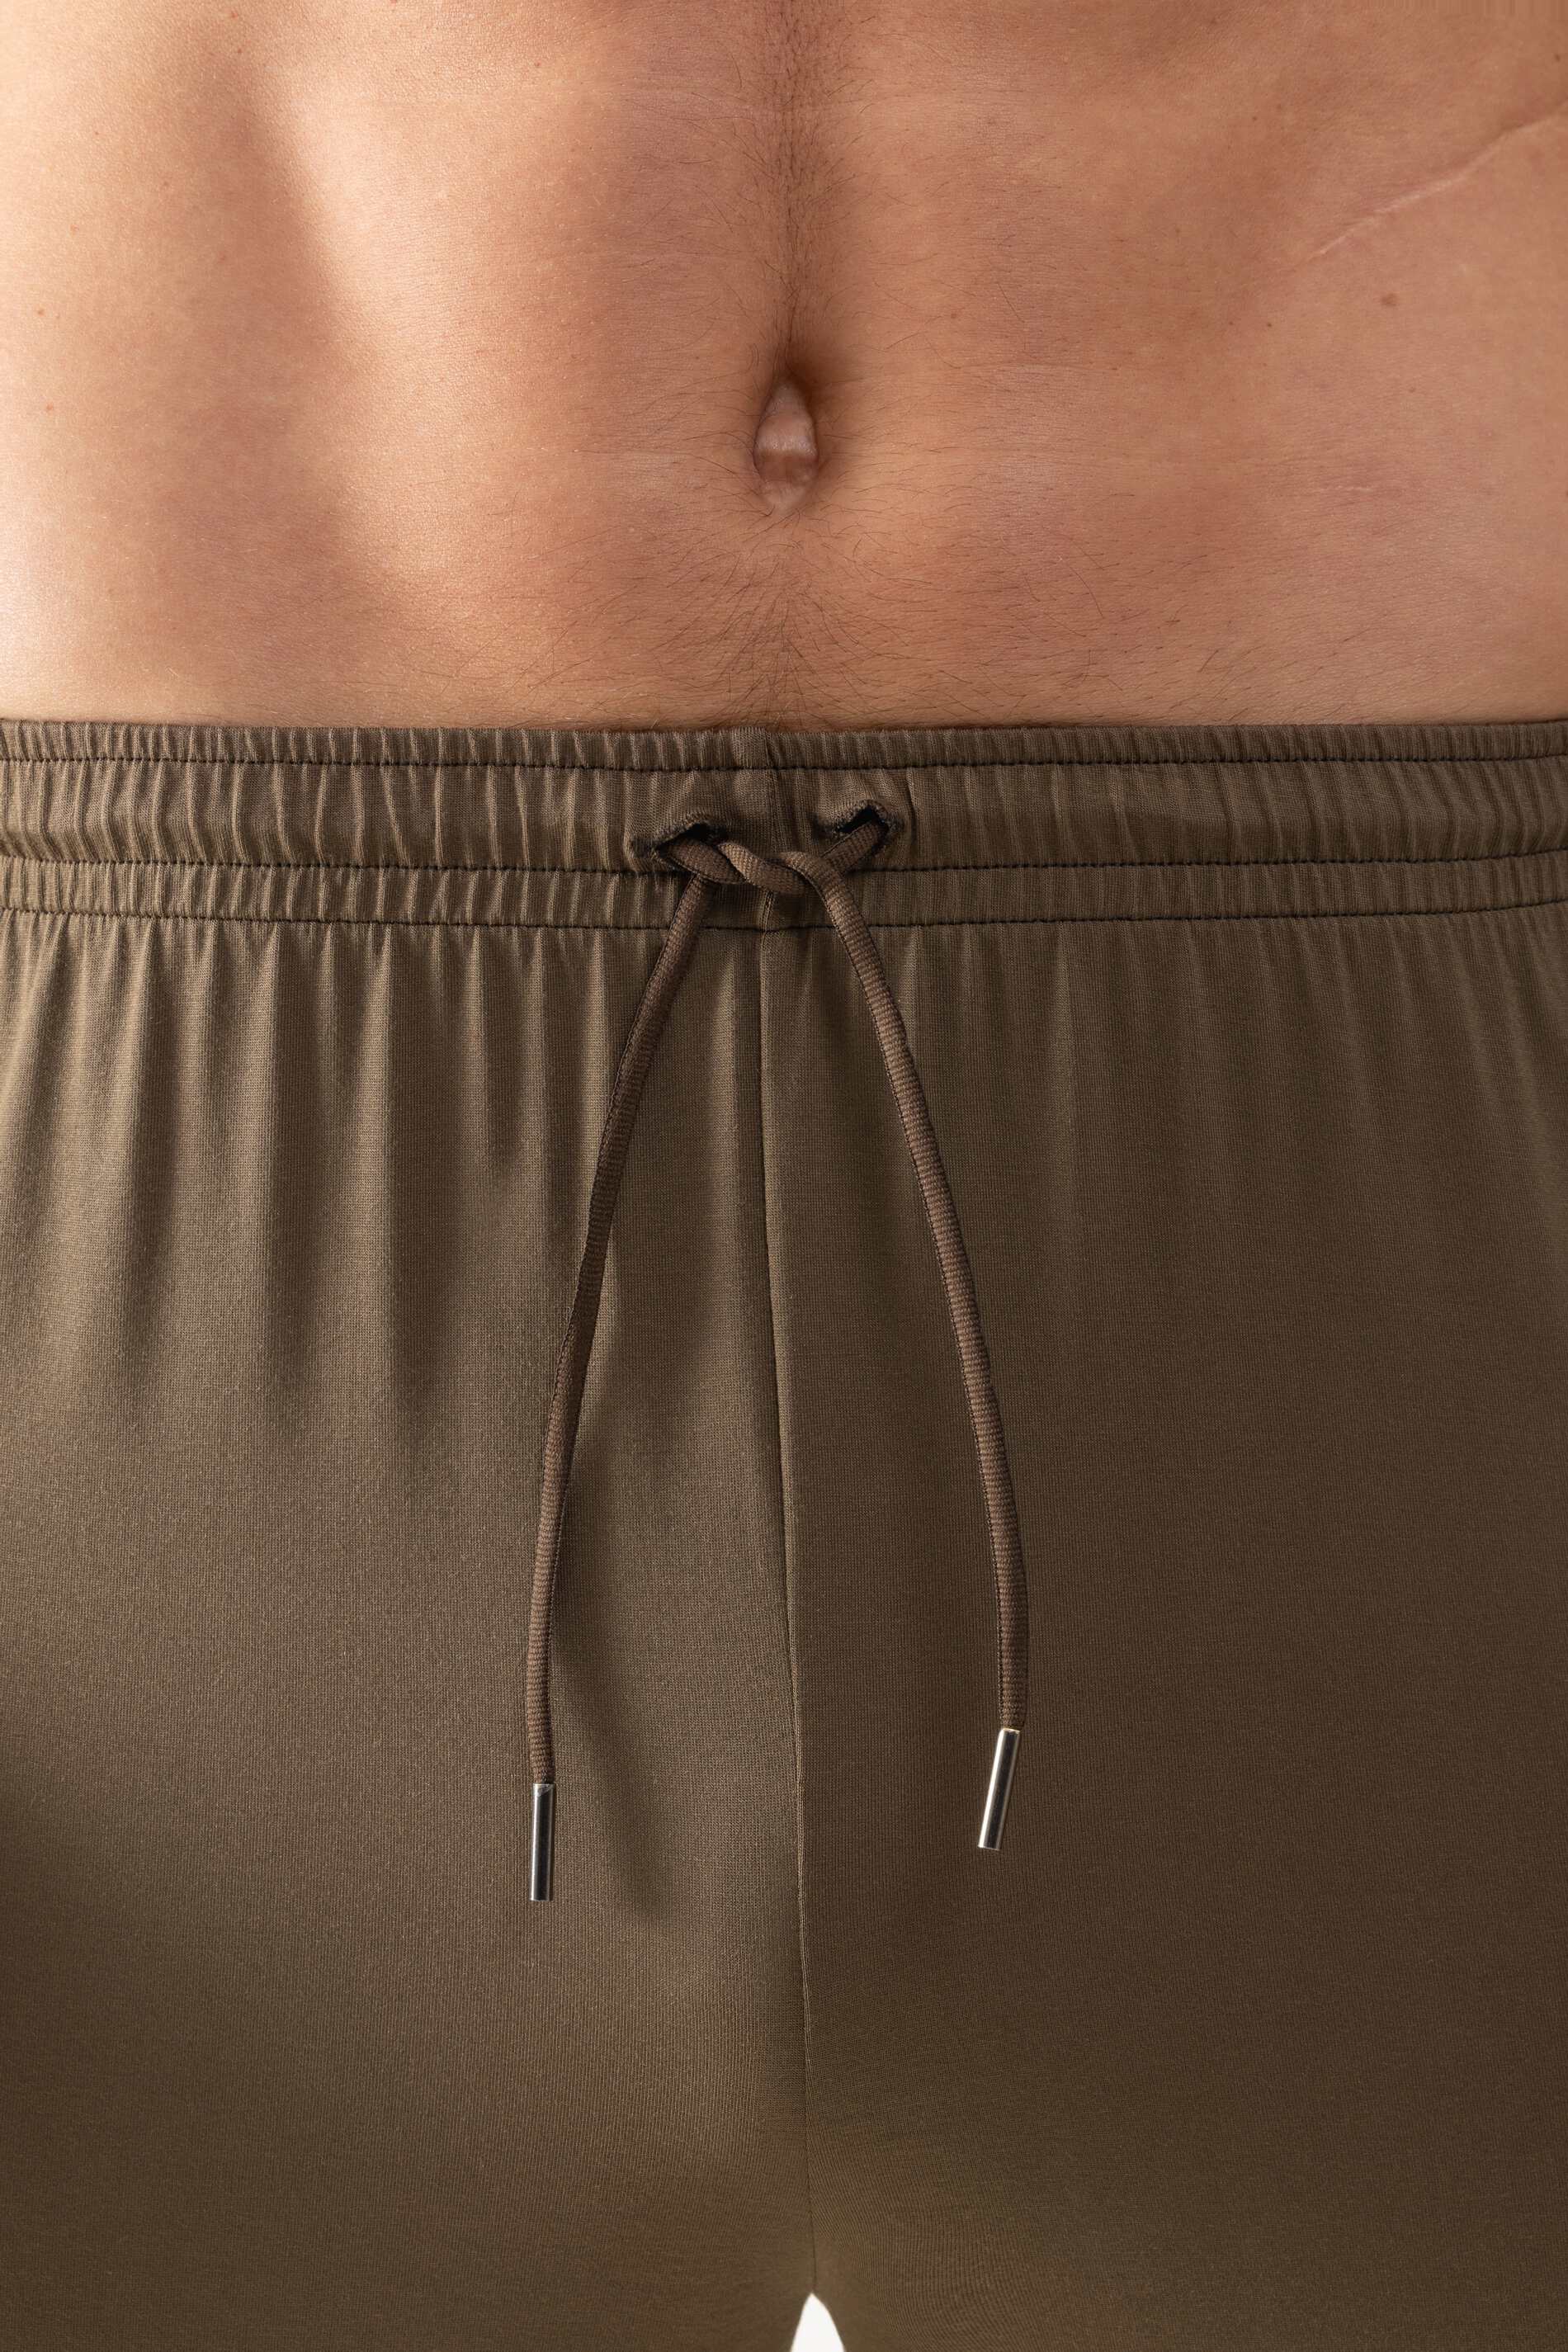 Long pants Serie Jefferson Modal Detail View 01 | mey®